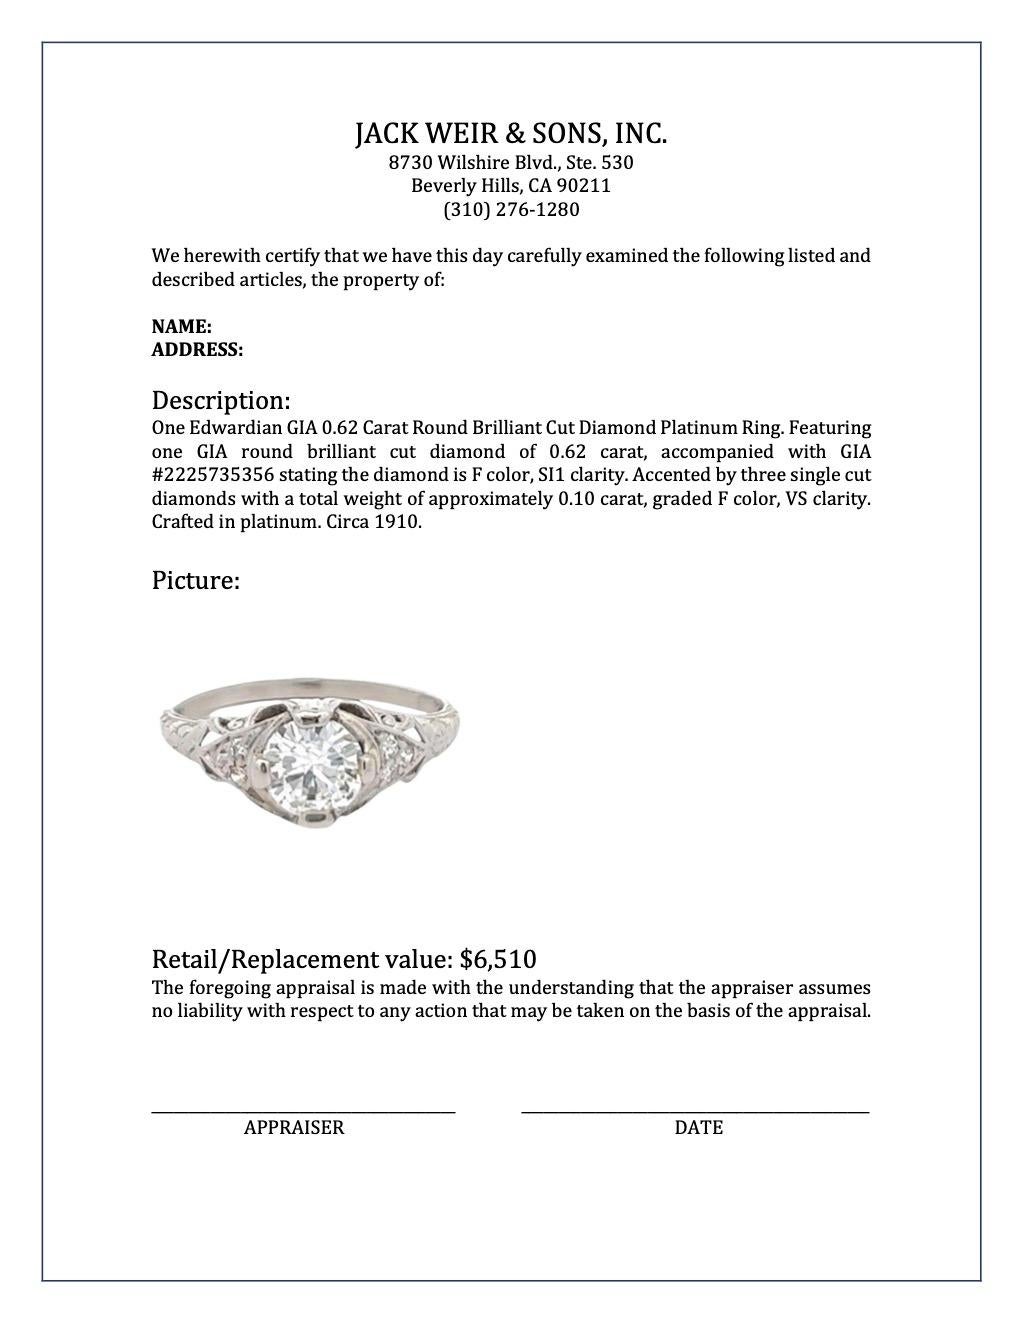 Bague édouardienne en platine avec diamants taille brillant rond de 0,62 carat certifiés GIA 2